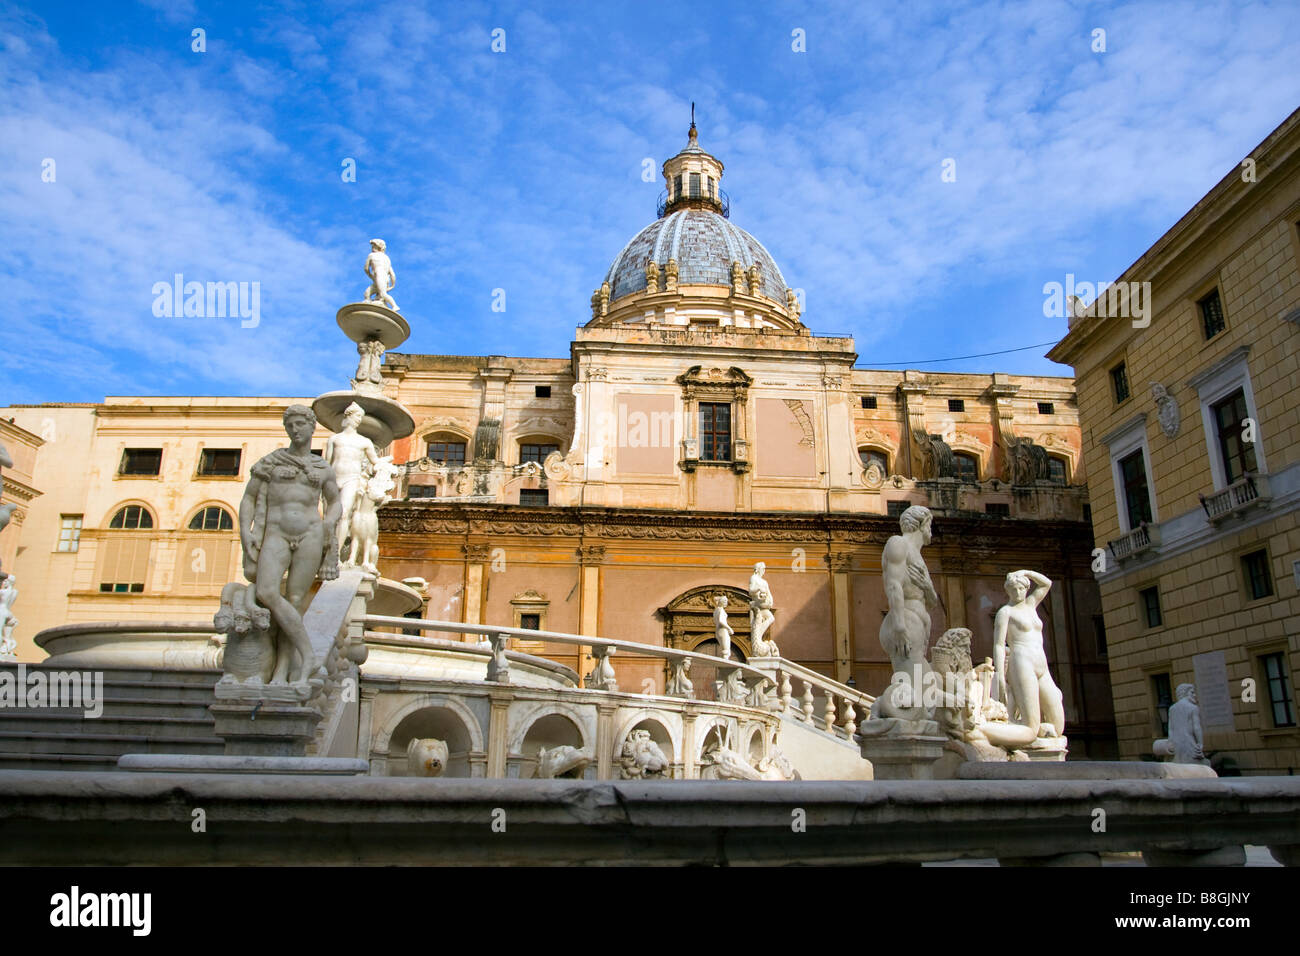 Piazza Pretoria, Palermo, Sicily, Italy. Stock Photo